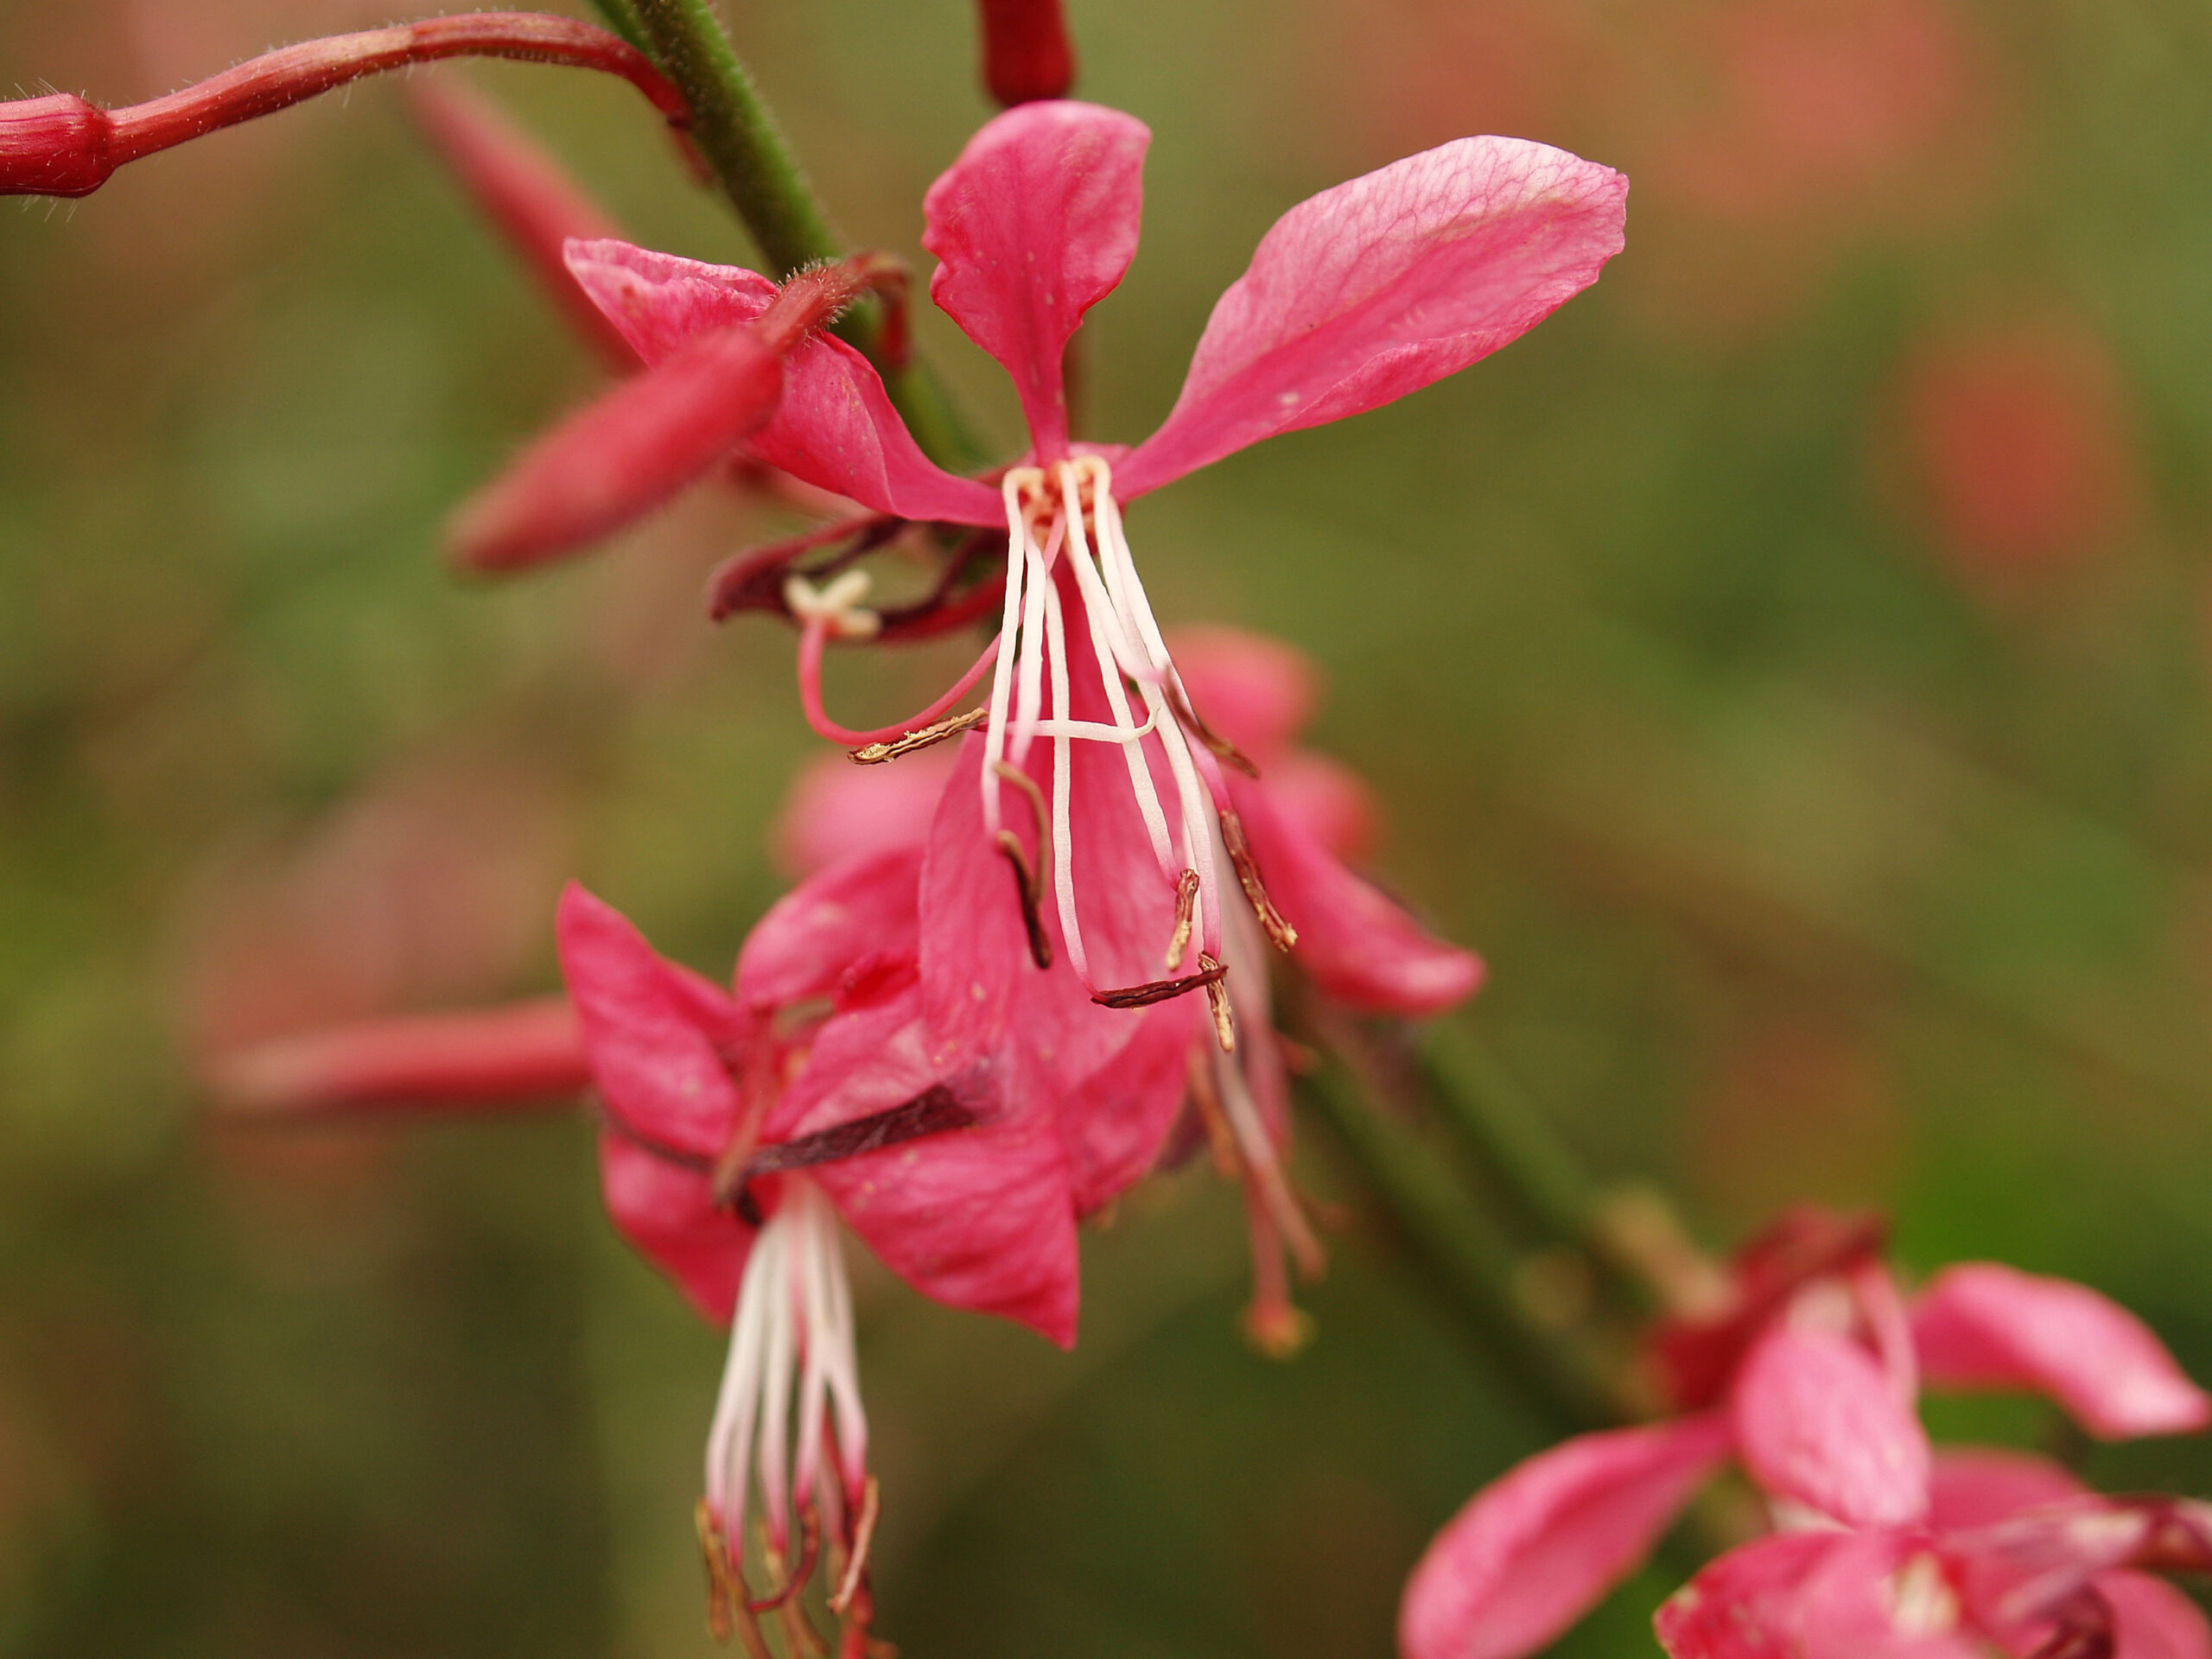 GAURA lindheimeri 'Siskiyou Pink' - Siskiyou Wand Flower